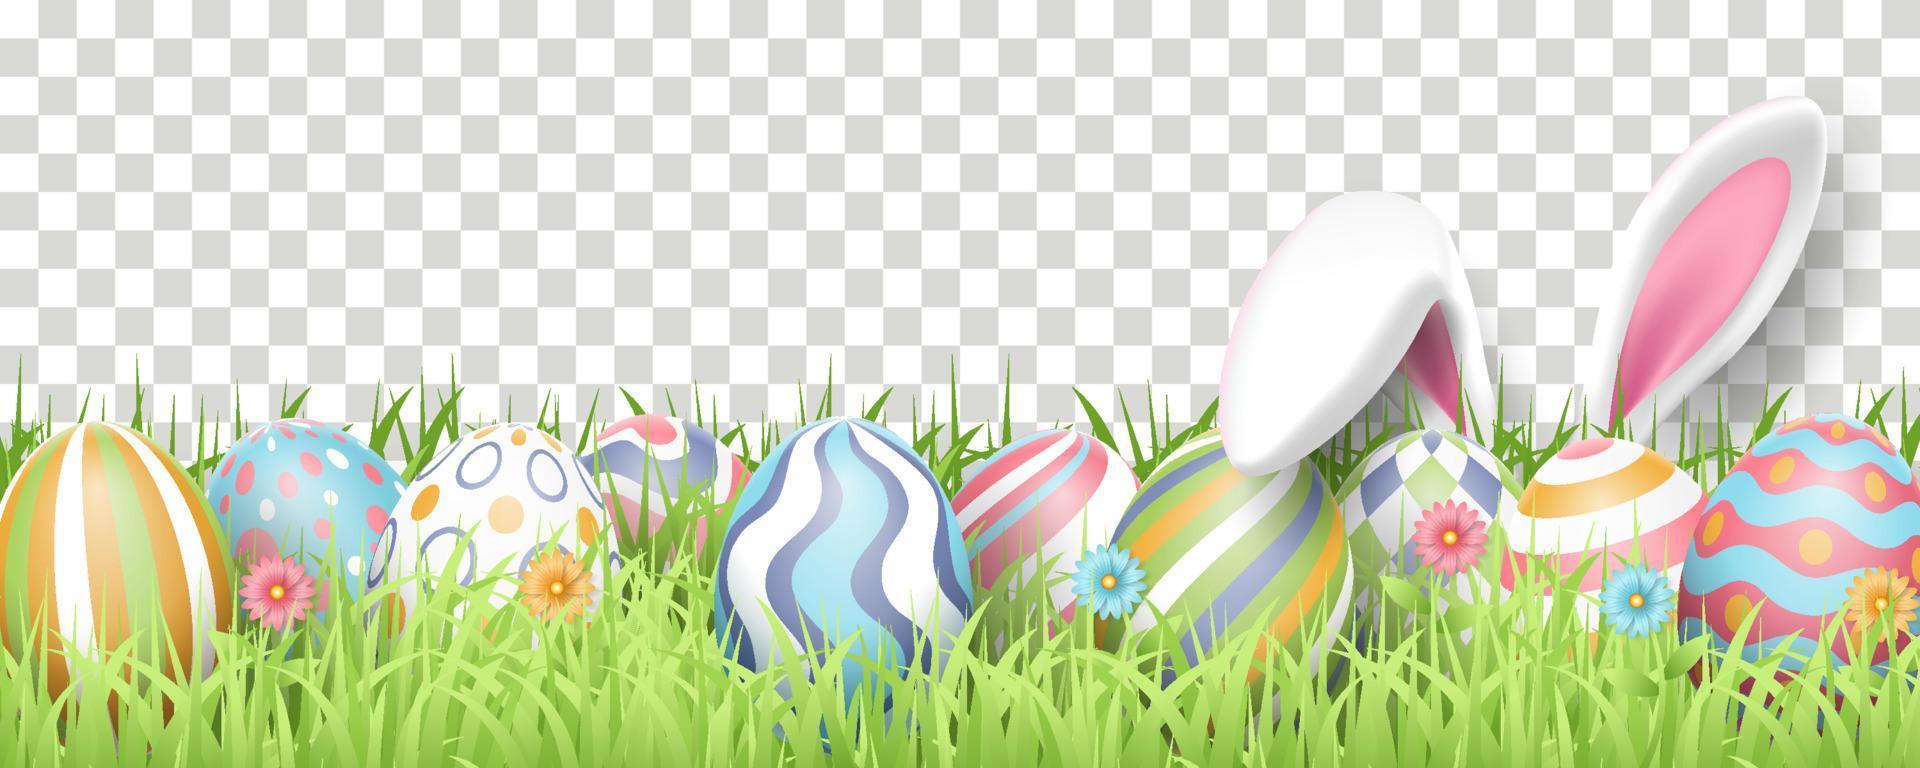 vrolijke pasen achtergrond met realistische beschilderde eieren, gras, bloemen en konijnenoren. vector illustratie